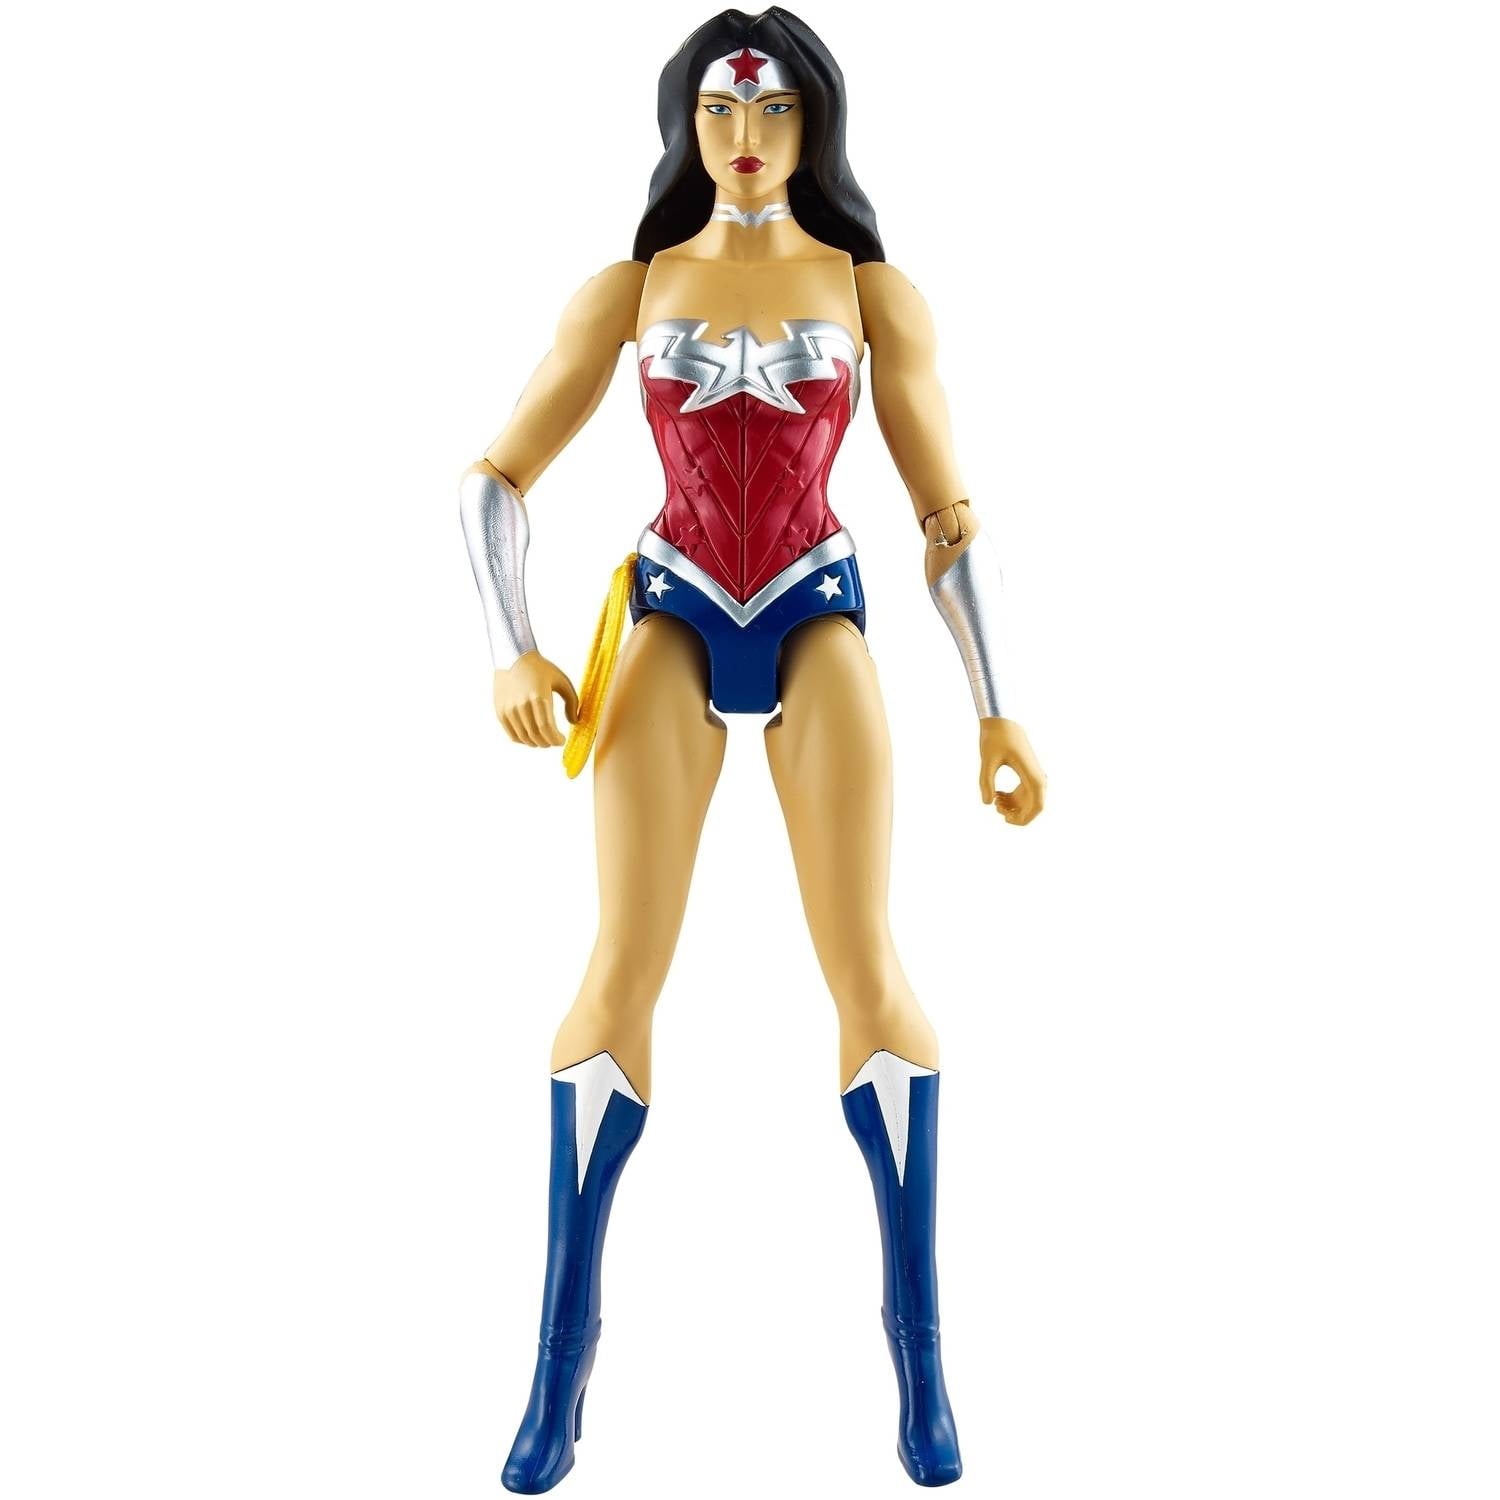 Wonder Woman 12 Inch  Action figure  misb new   dc comics unlimited  mint 